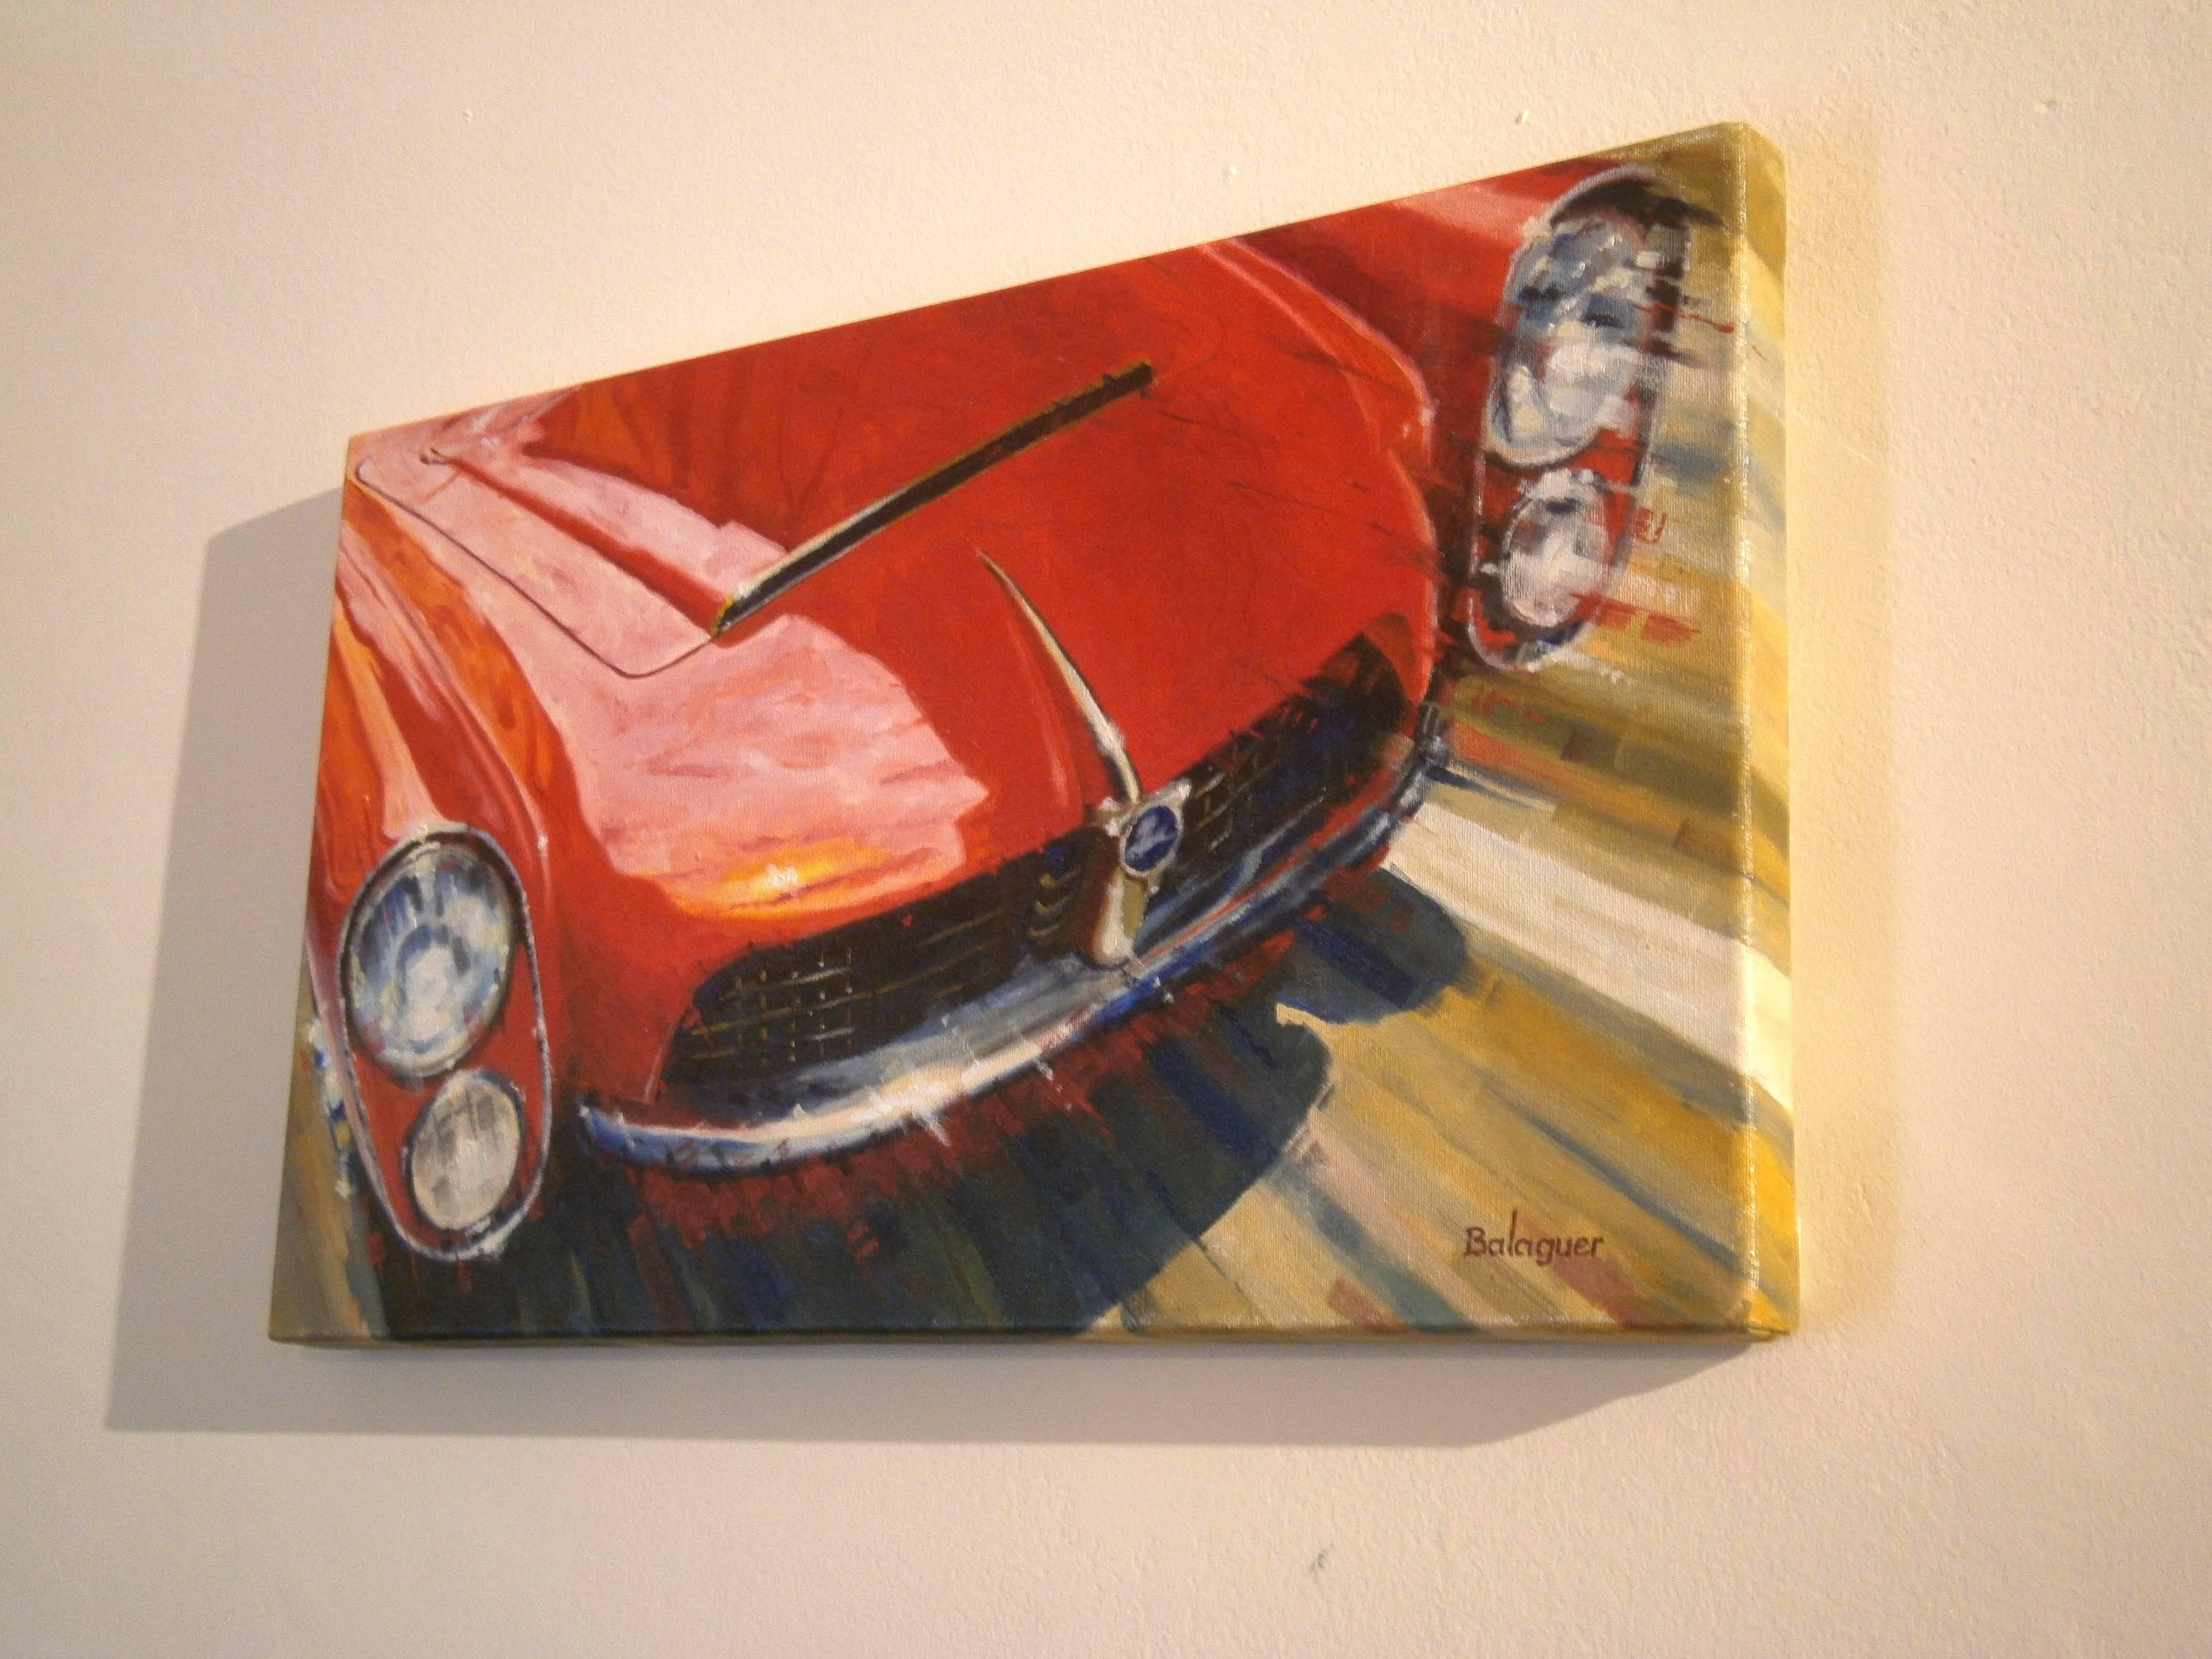  Balaguer  Classic Car Red 